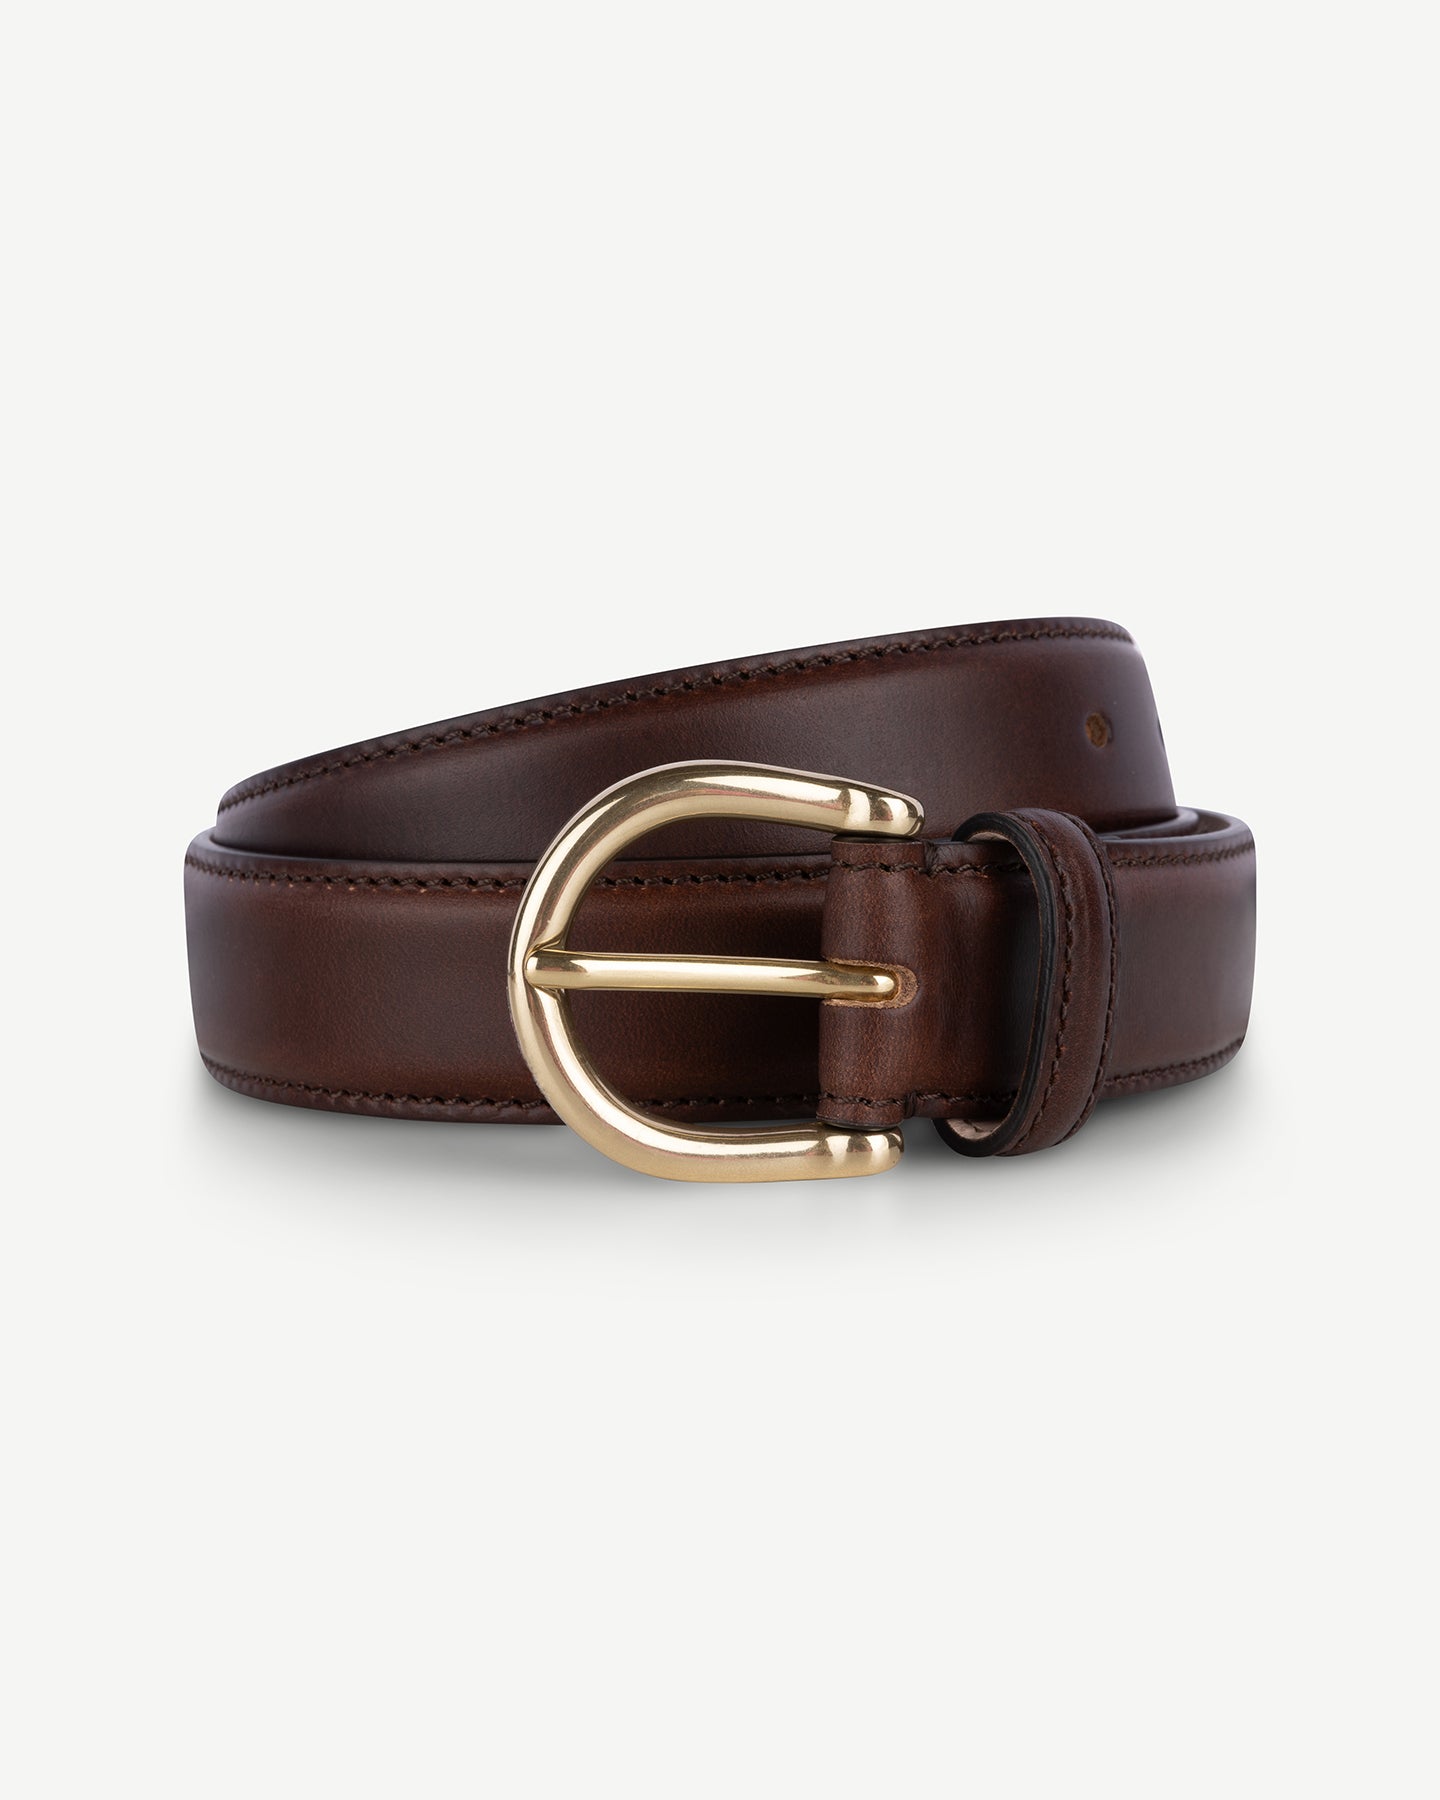 Dark brown leather dress belt